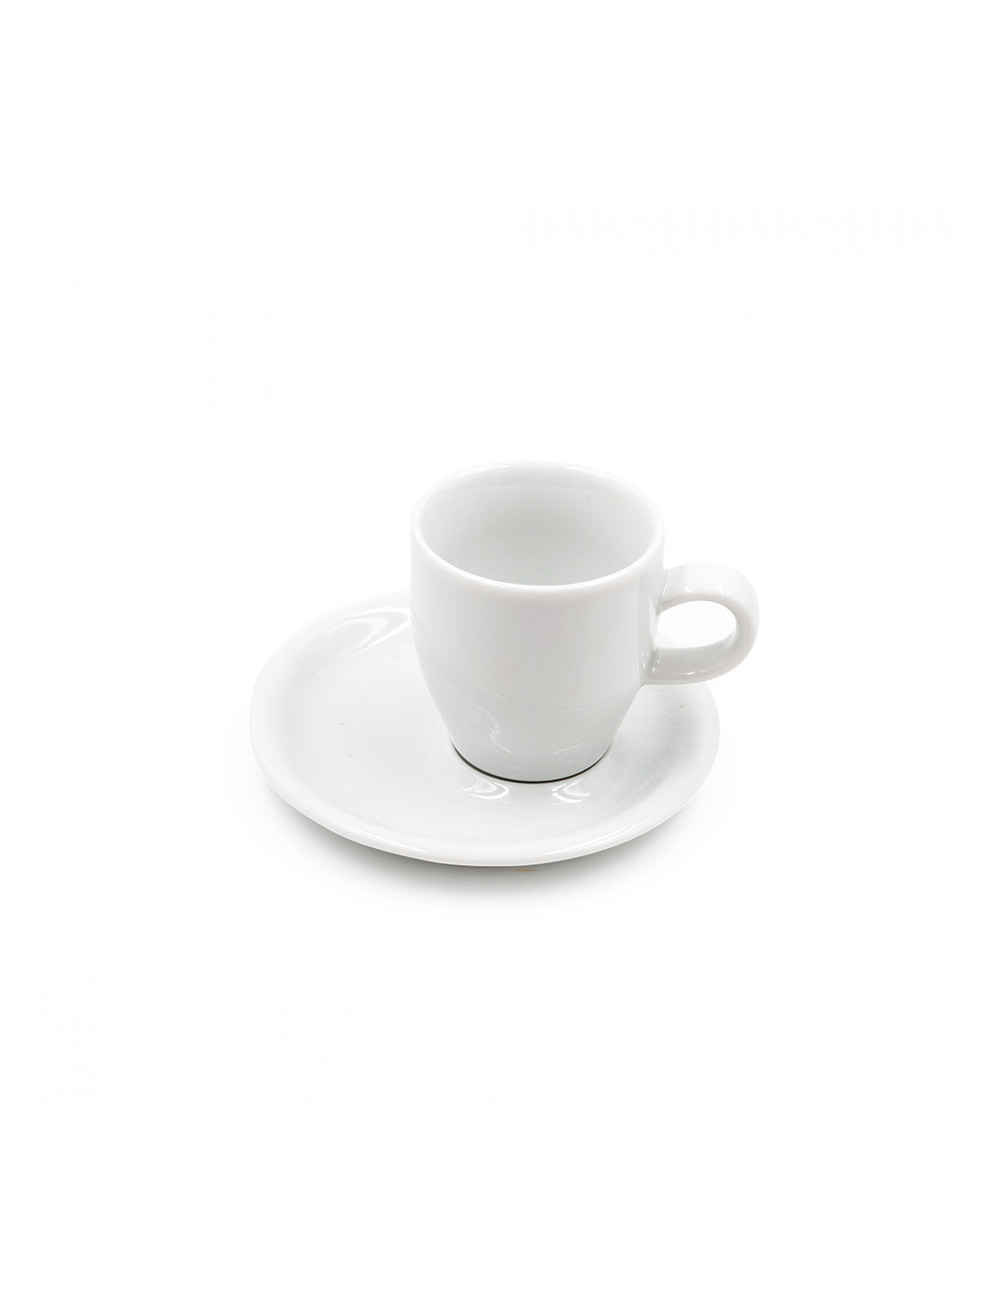 Classica tazzina da caffè Luka in ceramica bianca con manico e piattino - La Pianta del Tè shop on line